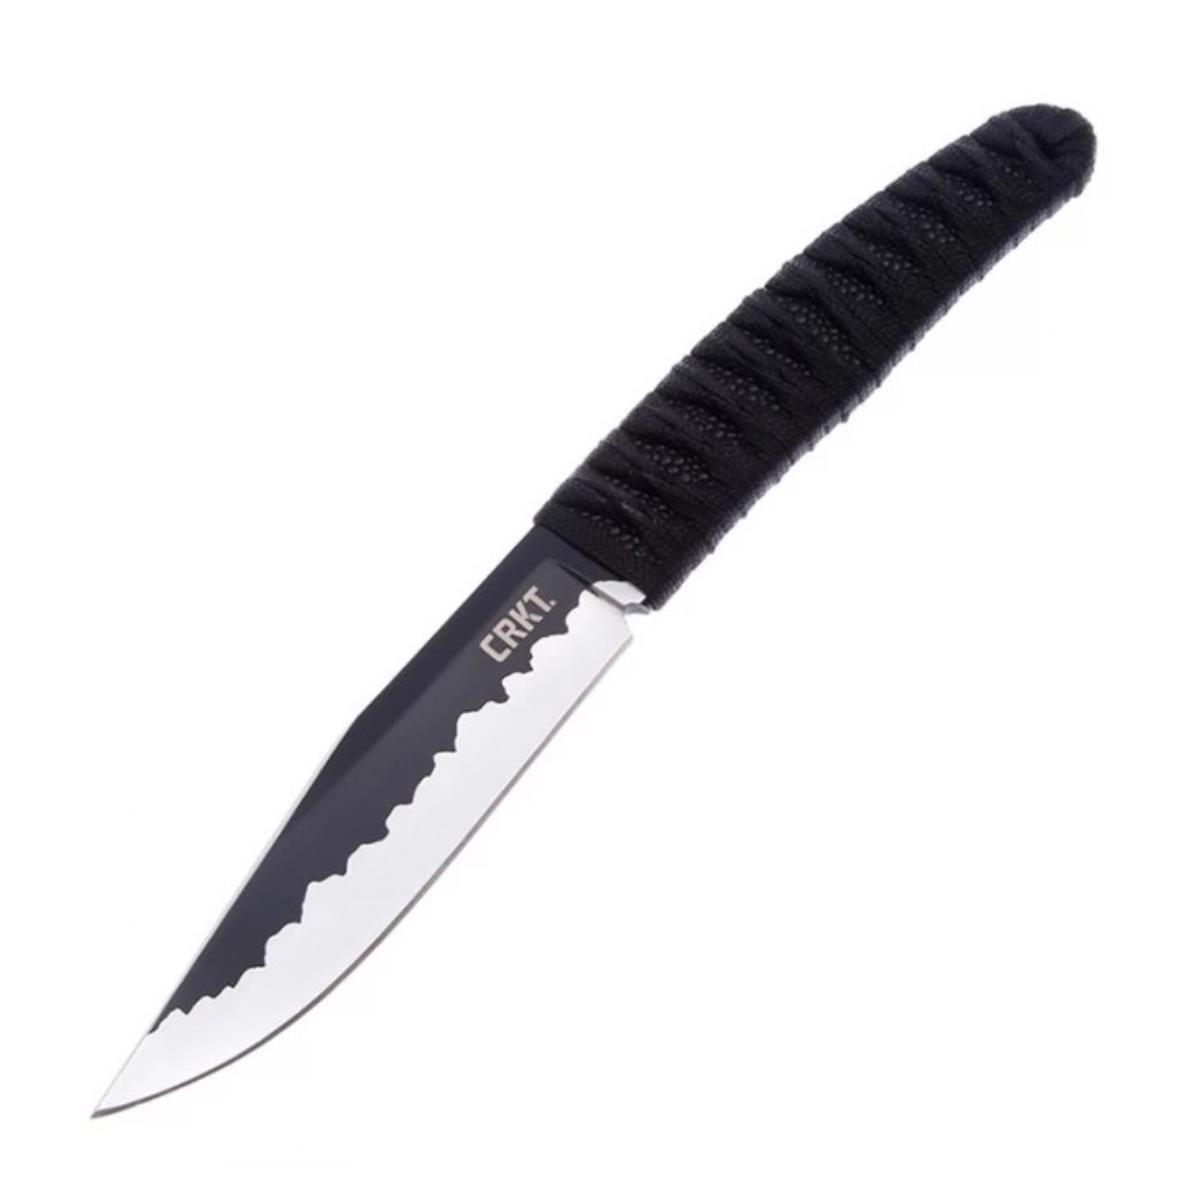 Нож Nishi с фикс. клинком, рук-ть паракорд, клинок 8Cr13MoV, пластик. ножны CRKT_2290 комплект ножей к шнеку fubag